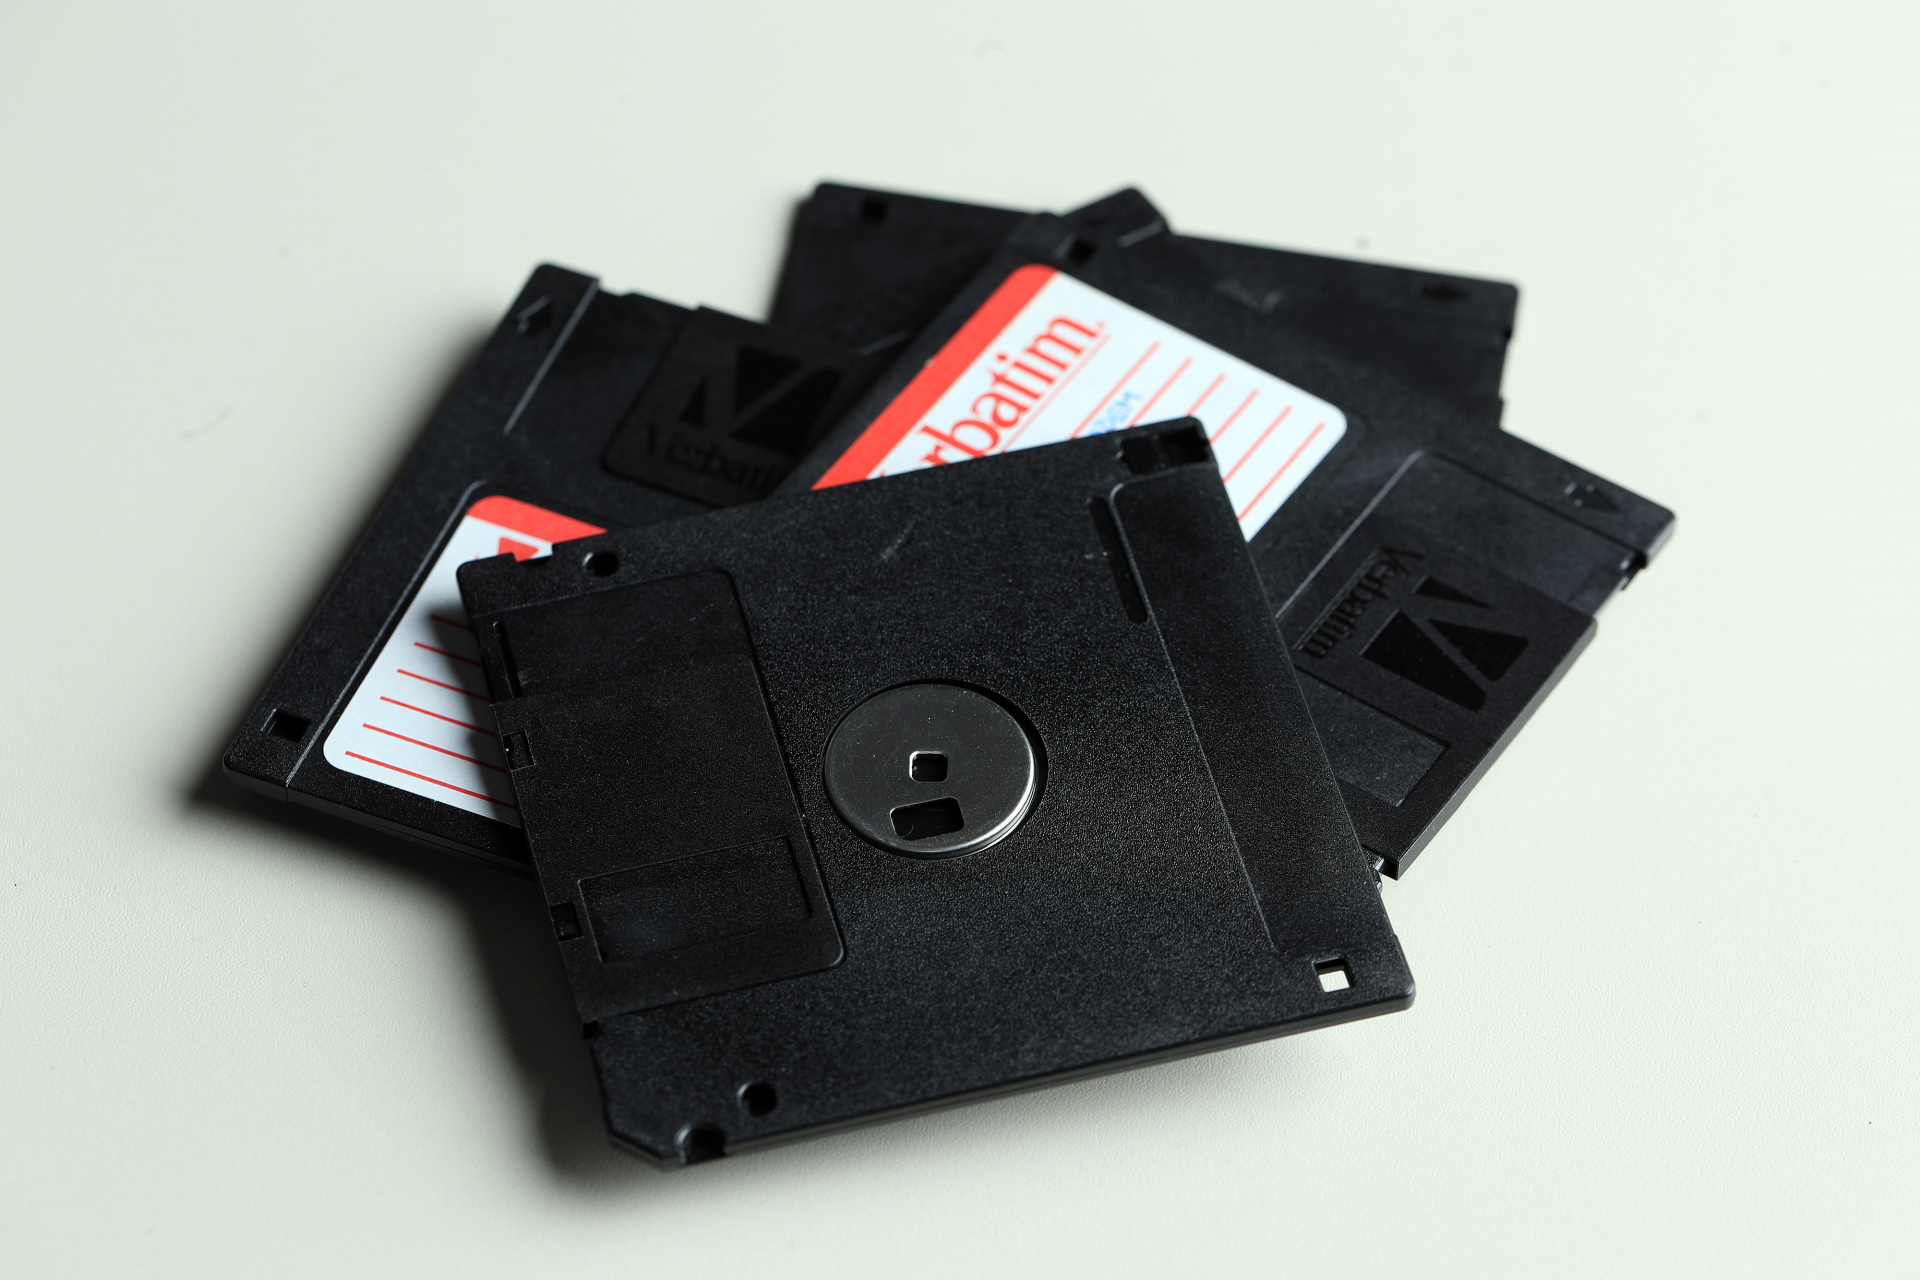 24.08.2018., Zagreb - Disketa (floppy disk) je uredjaj za pohranu podataka unutar racunala koji se sastoji od savitljive (eng. floppy = savitljiv) tanke okrugle ploce presvucene tankim slojem magnetske tvari koja se nalazi unutar jedne plasticne omotnice kvadratnog oblika. Kapacitet diska je 1,44 MB
Photo: Slavko Midzor/PIXSELL